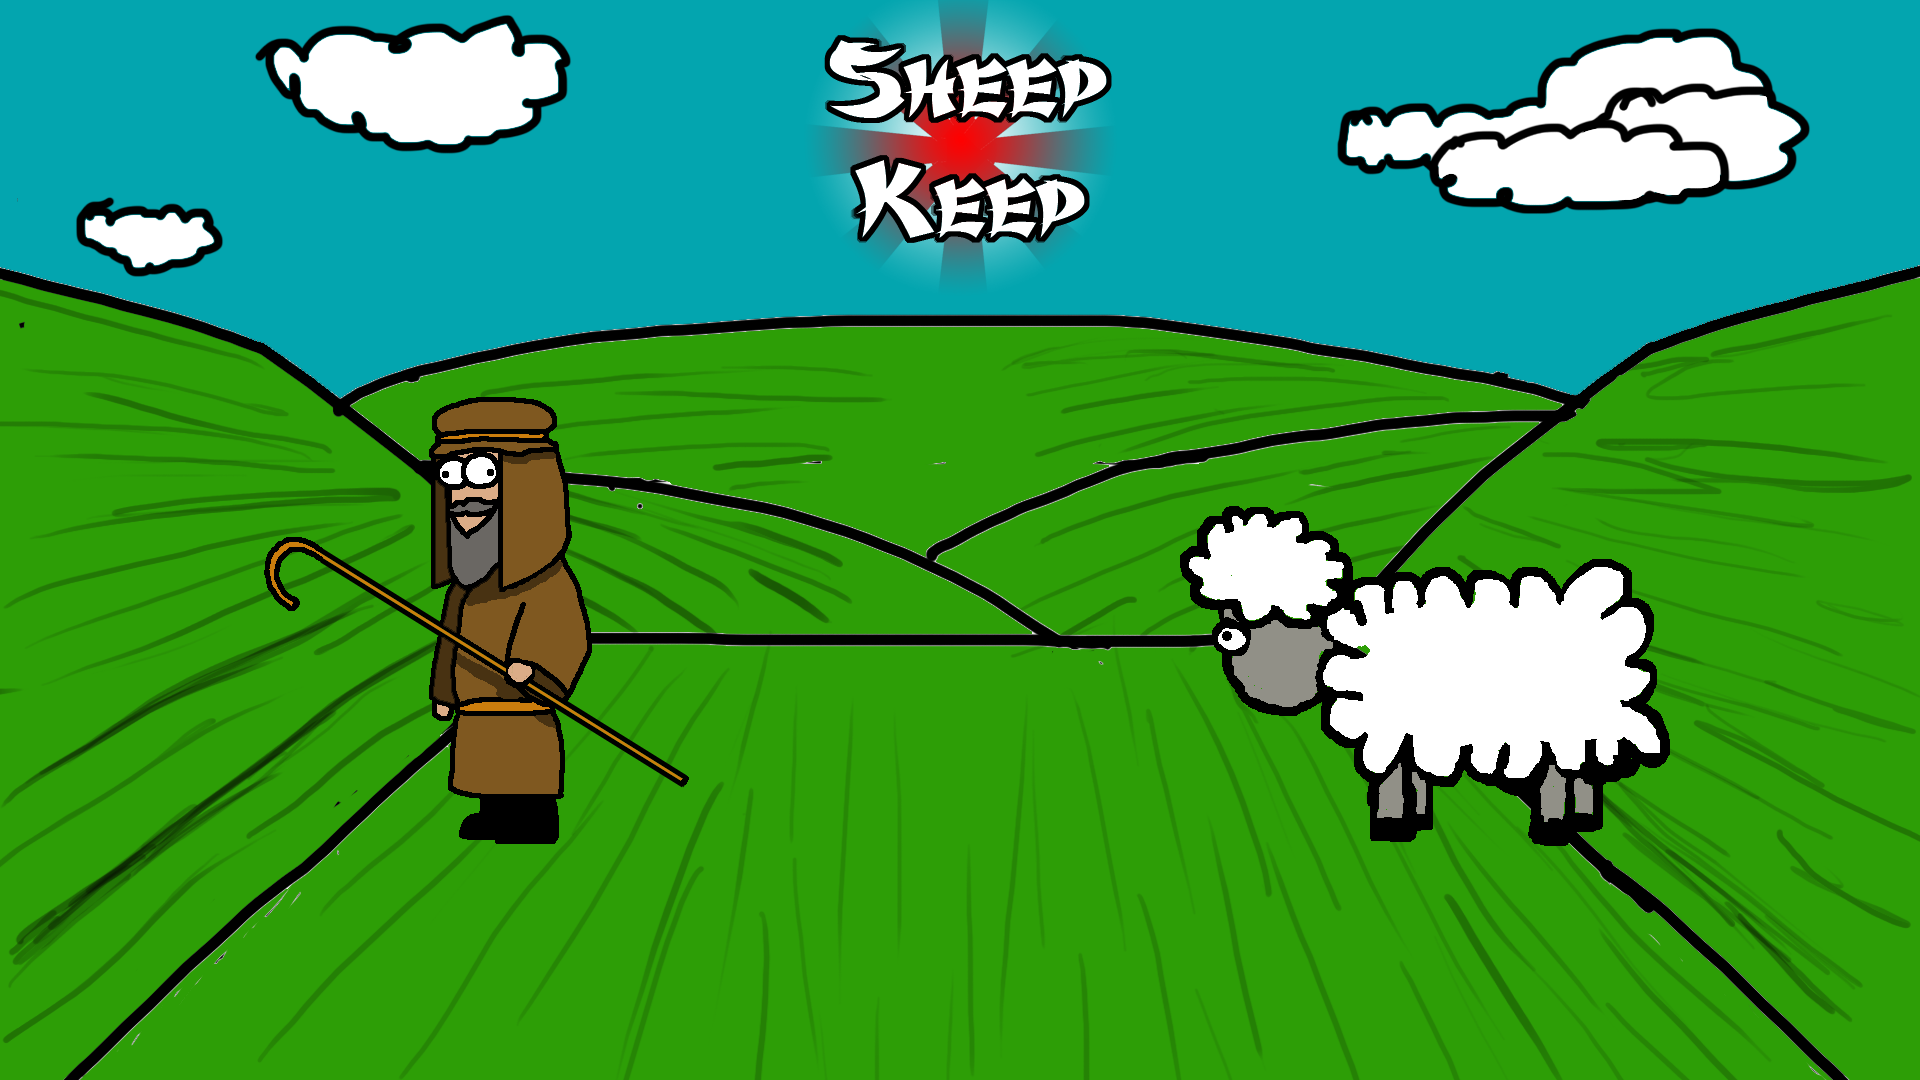 Sheep Keep